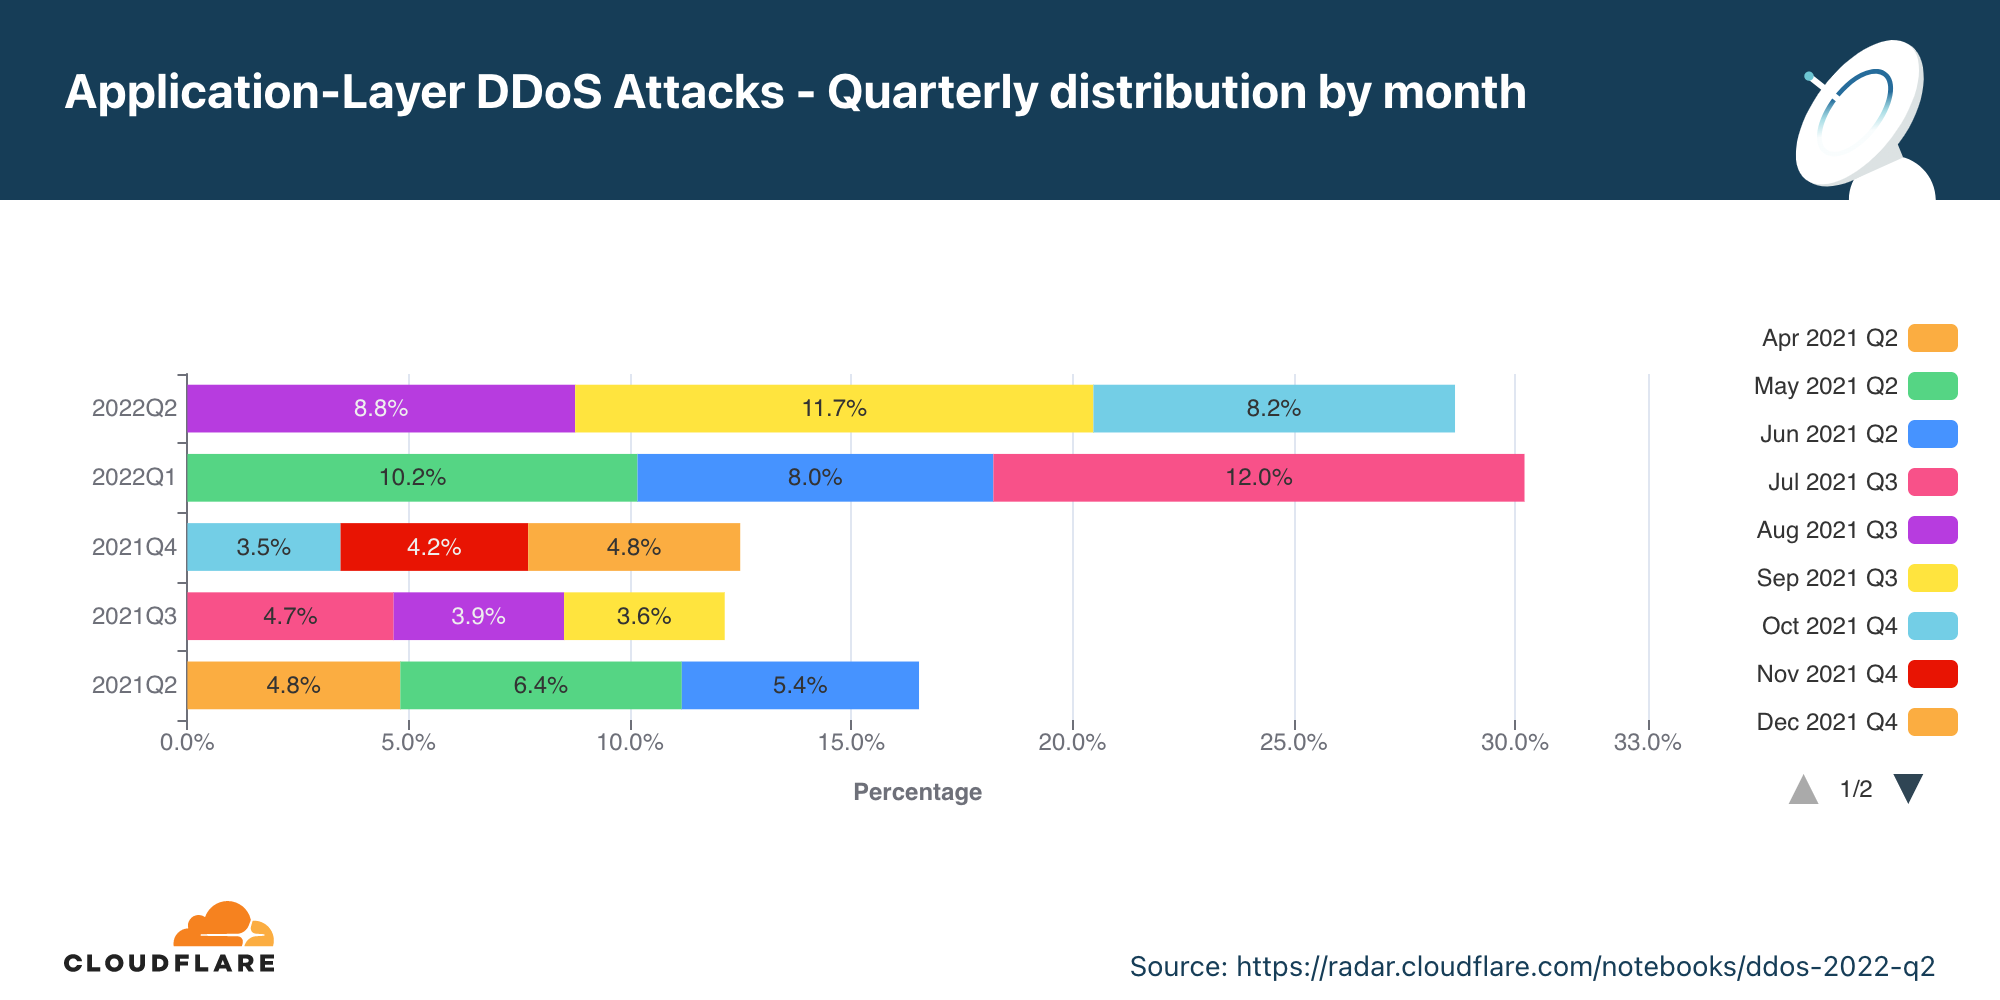 Gráfico de la distribución anual de los ataques DDoS a la capa de aplicación por mes en los últimos 12 meses